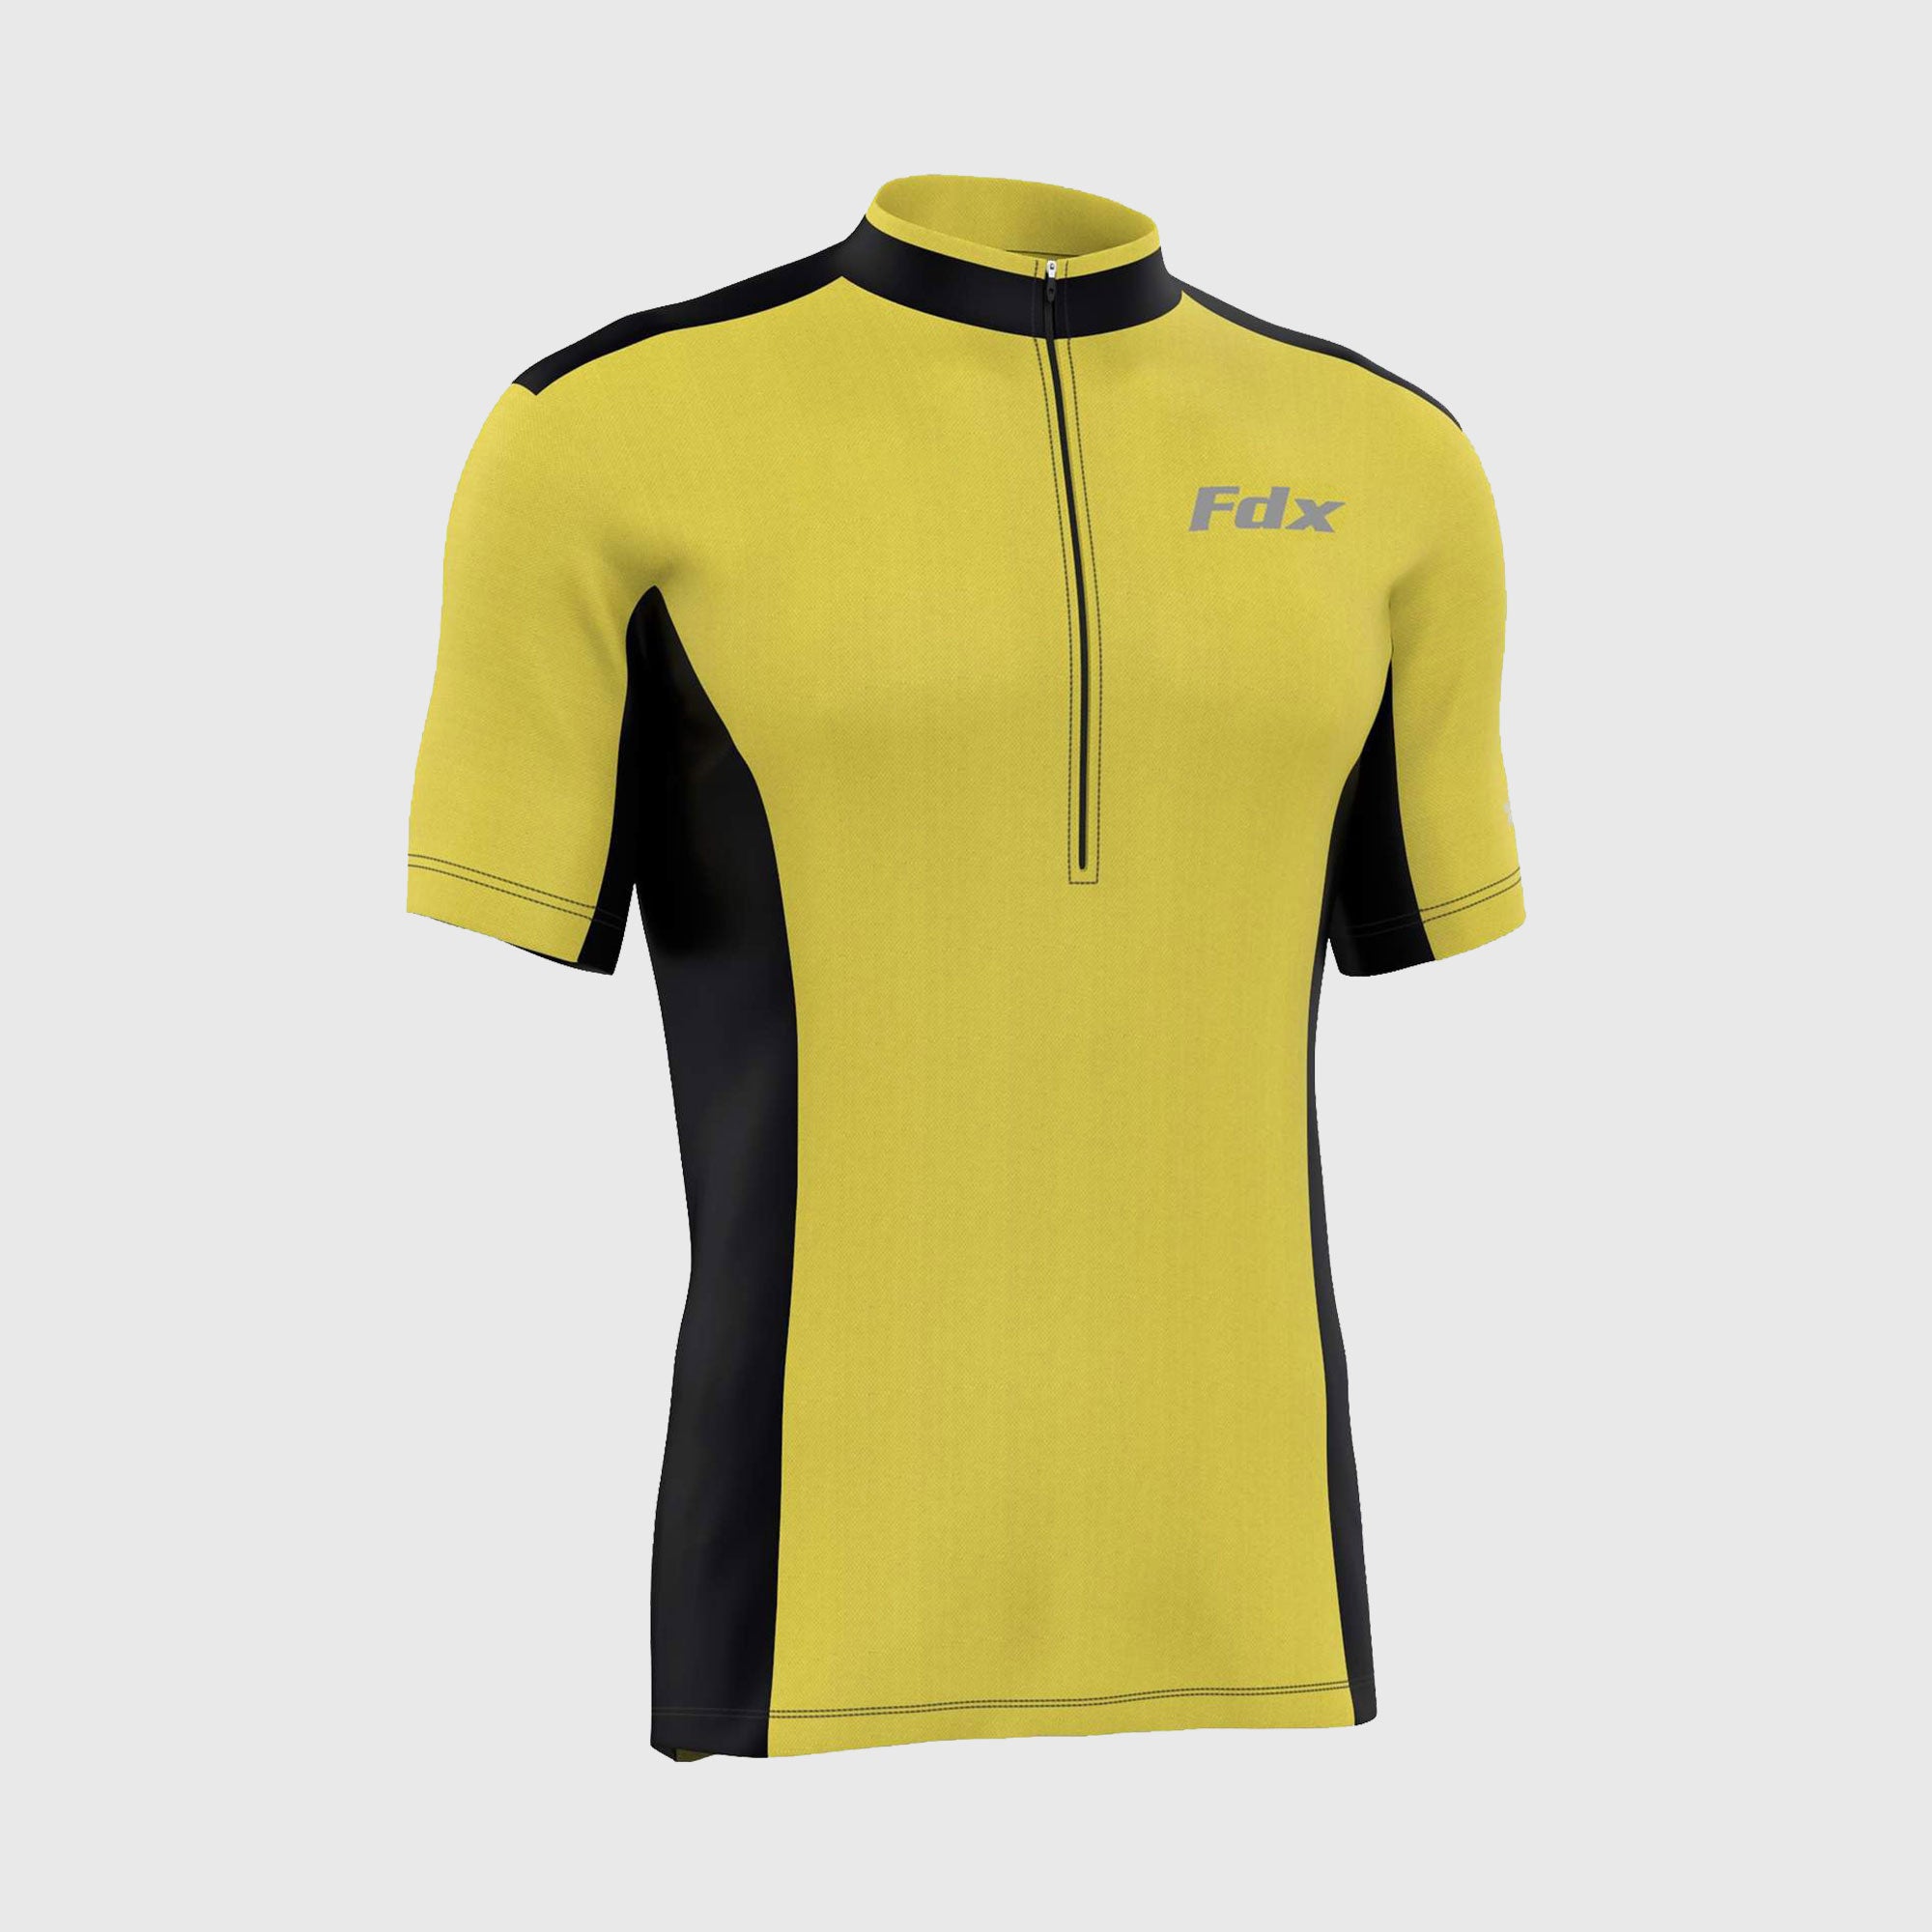 Fdx Vertex Yellow Men's Short Sleeve Summer Cycling Jersey